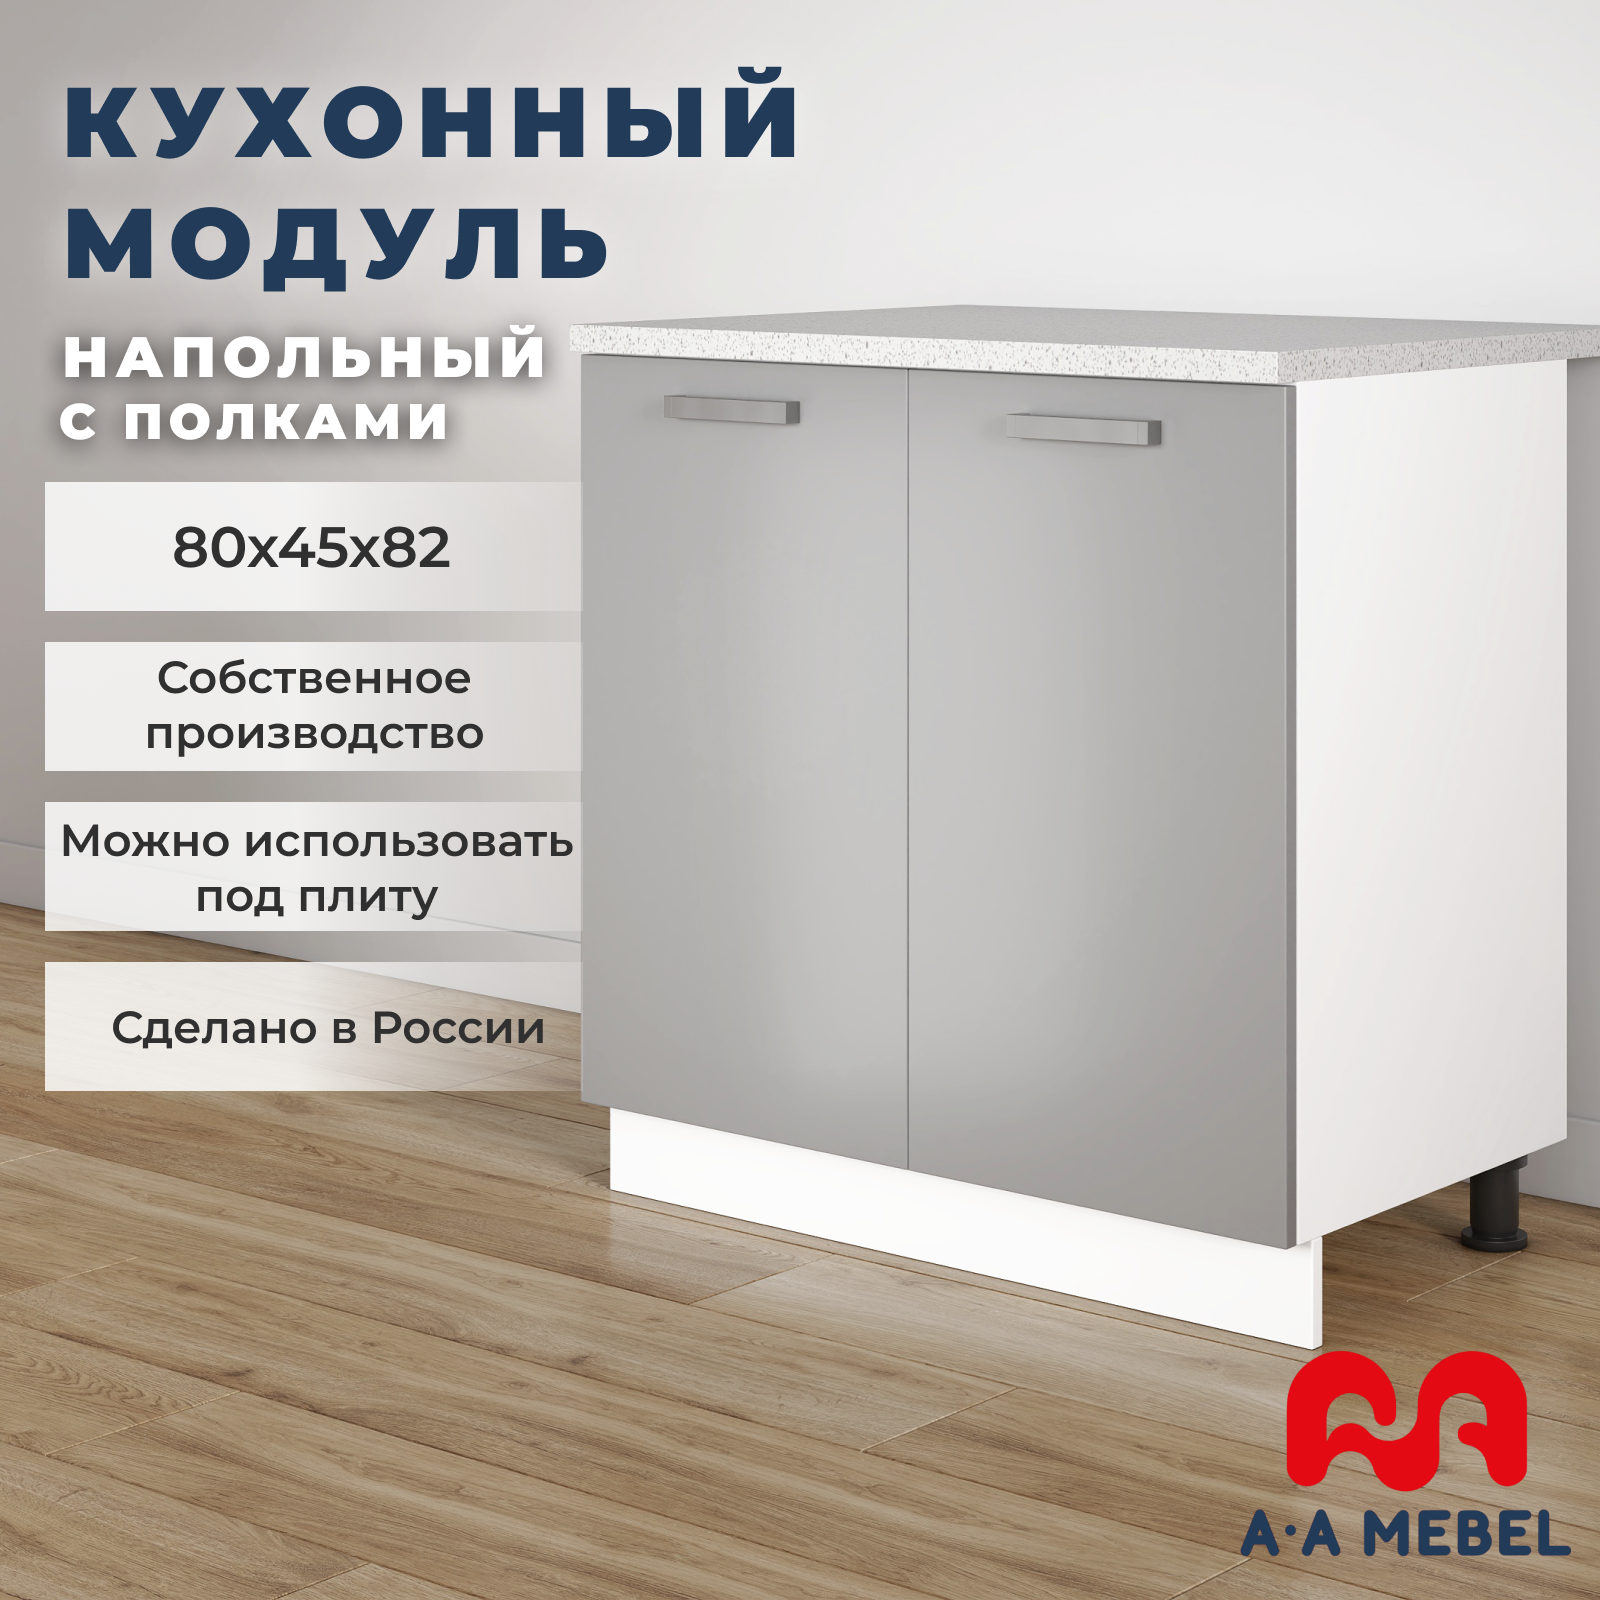 Кухонный модуль A-А MEBEL напольный, с полками, со столешницей, 80х45х82 см, серый глянец